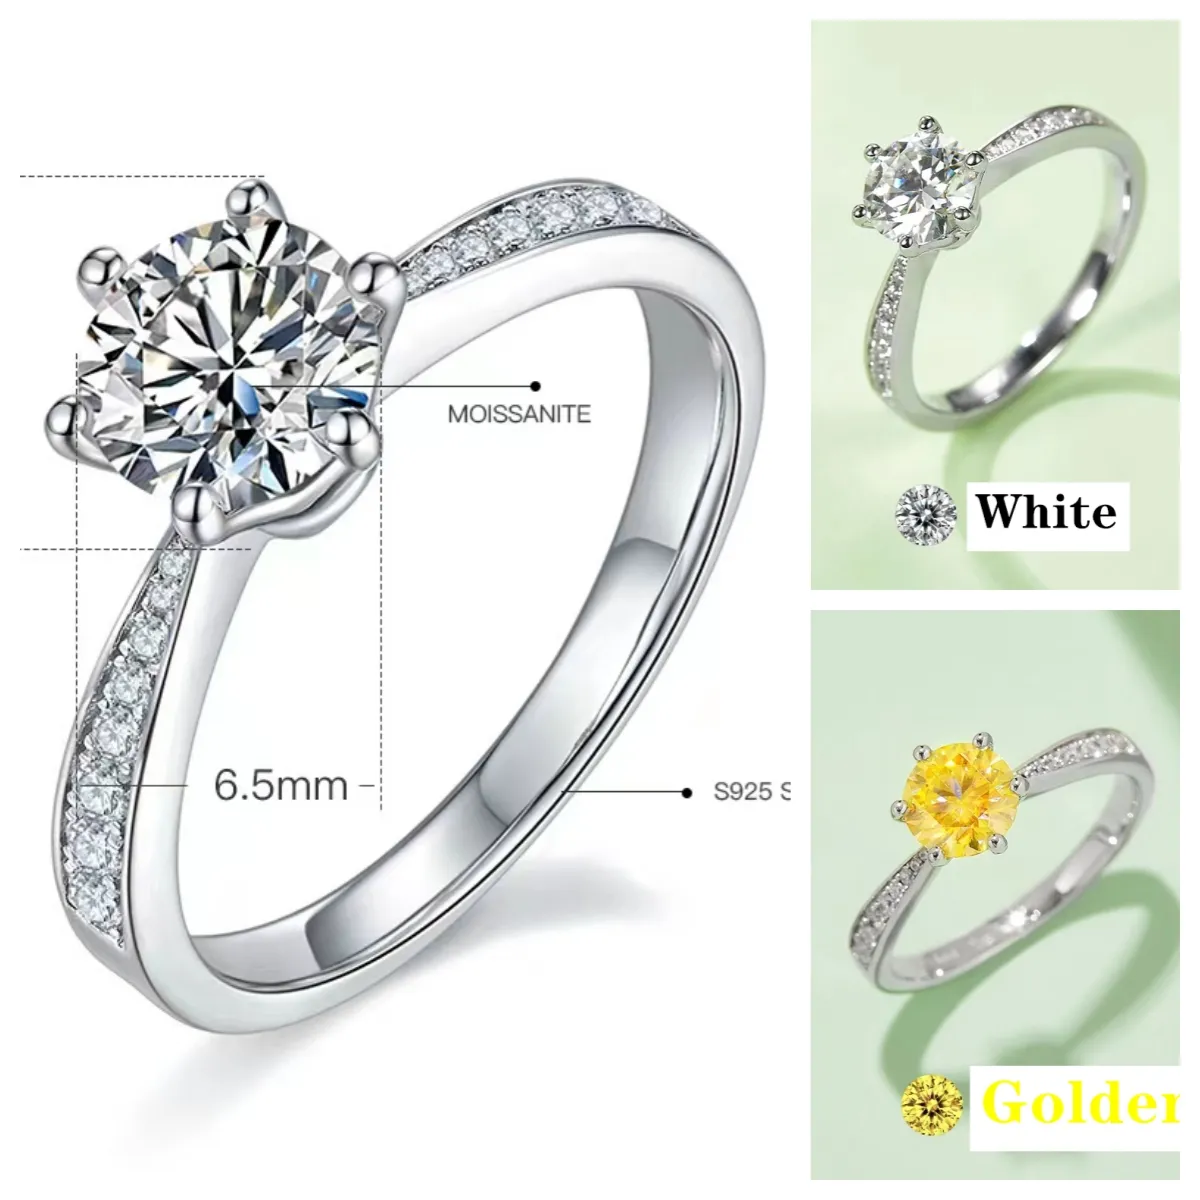 Pierścienie miłosne Designer Pierścień para biżuterii luksusowy projektant Złoty niebieski różowy biały pierścień moissanite żeński srebrzysty pierścień proste ramię M21a